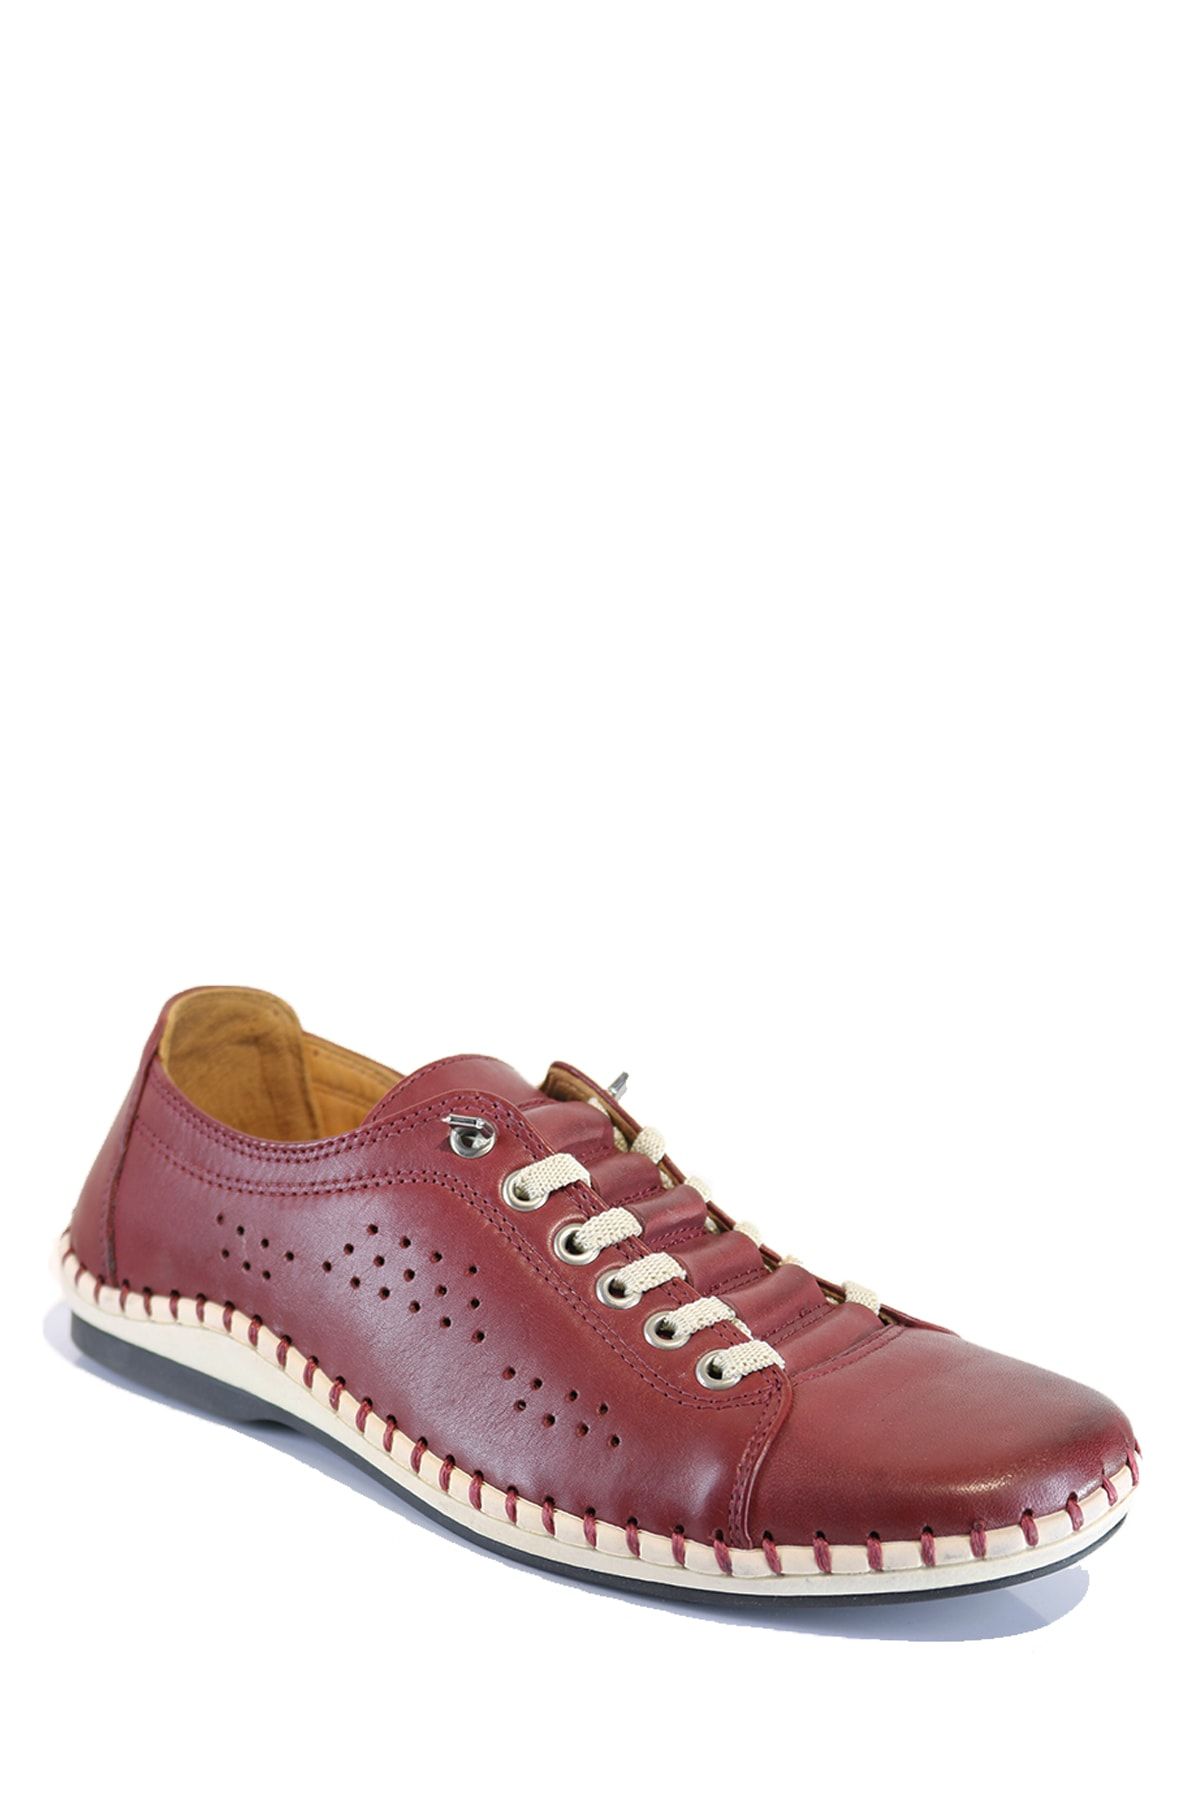 Onemarka Erkek Hakiki Deri Beyaz Bağcıklı Lazer Delikli Bordo Renkli Günlük Ayakkabı